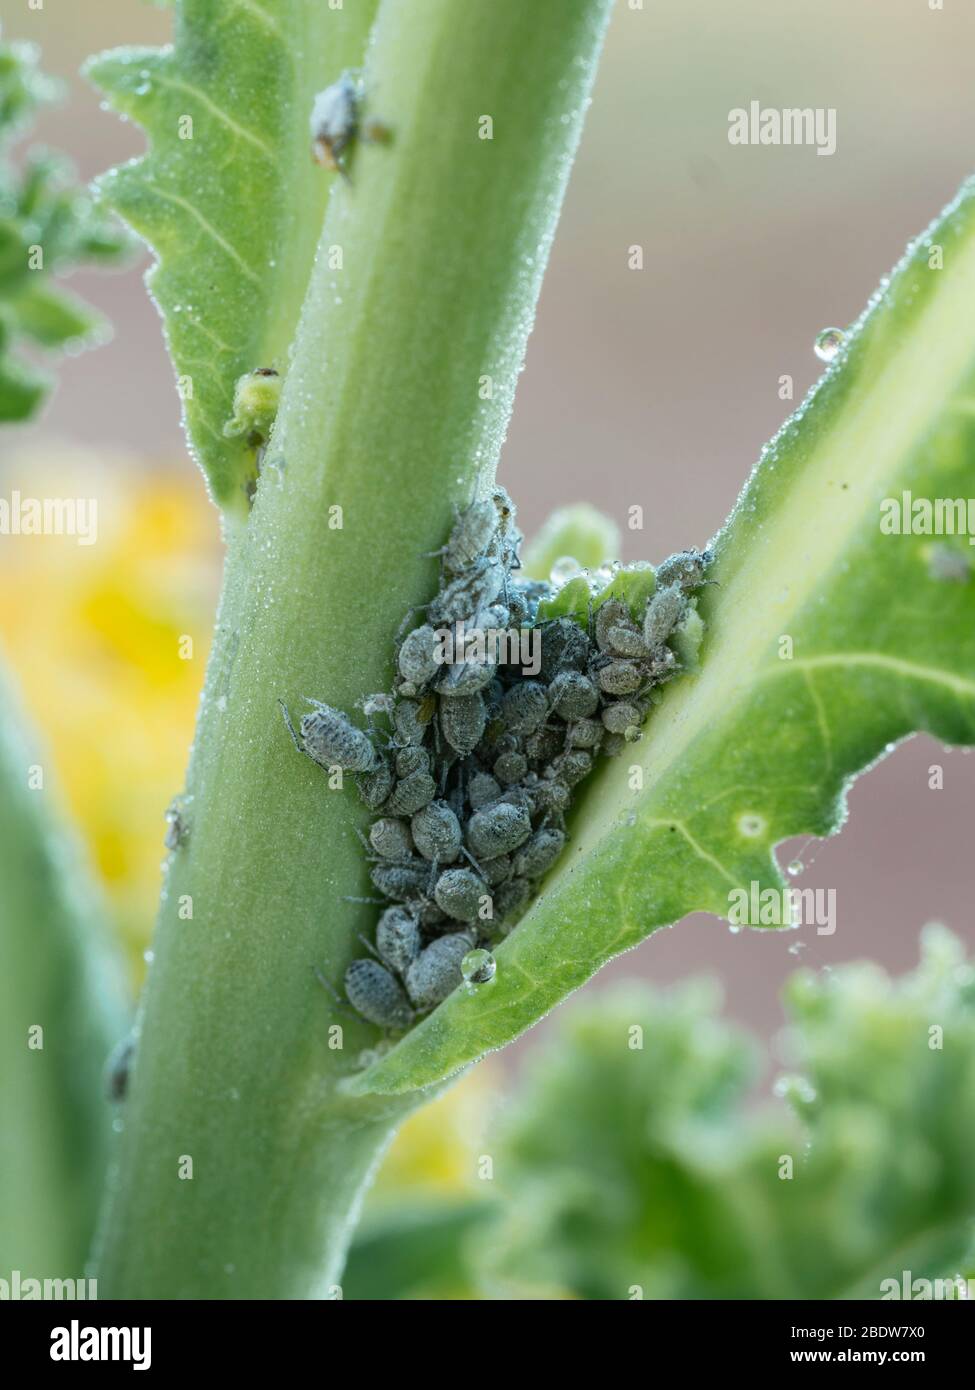 Kohlschnecken (Brevicoryne brassicae) auf einer Grünkohl-Pflanze Stockfoto